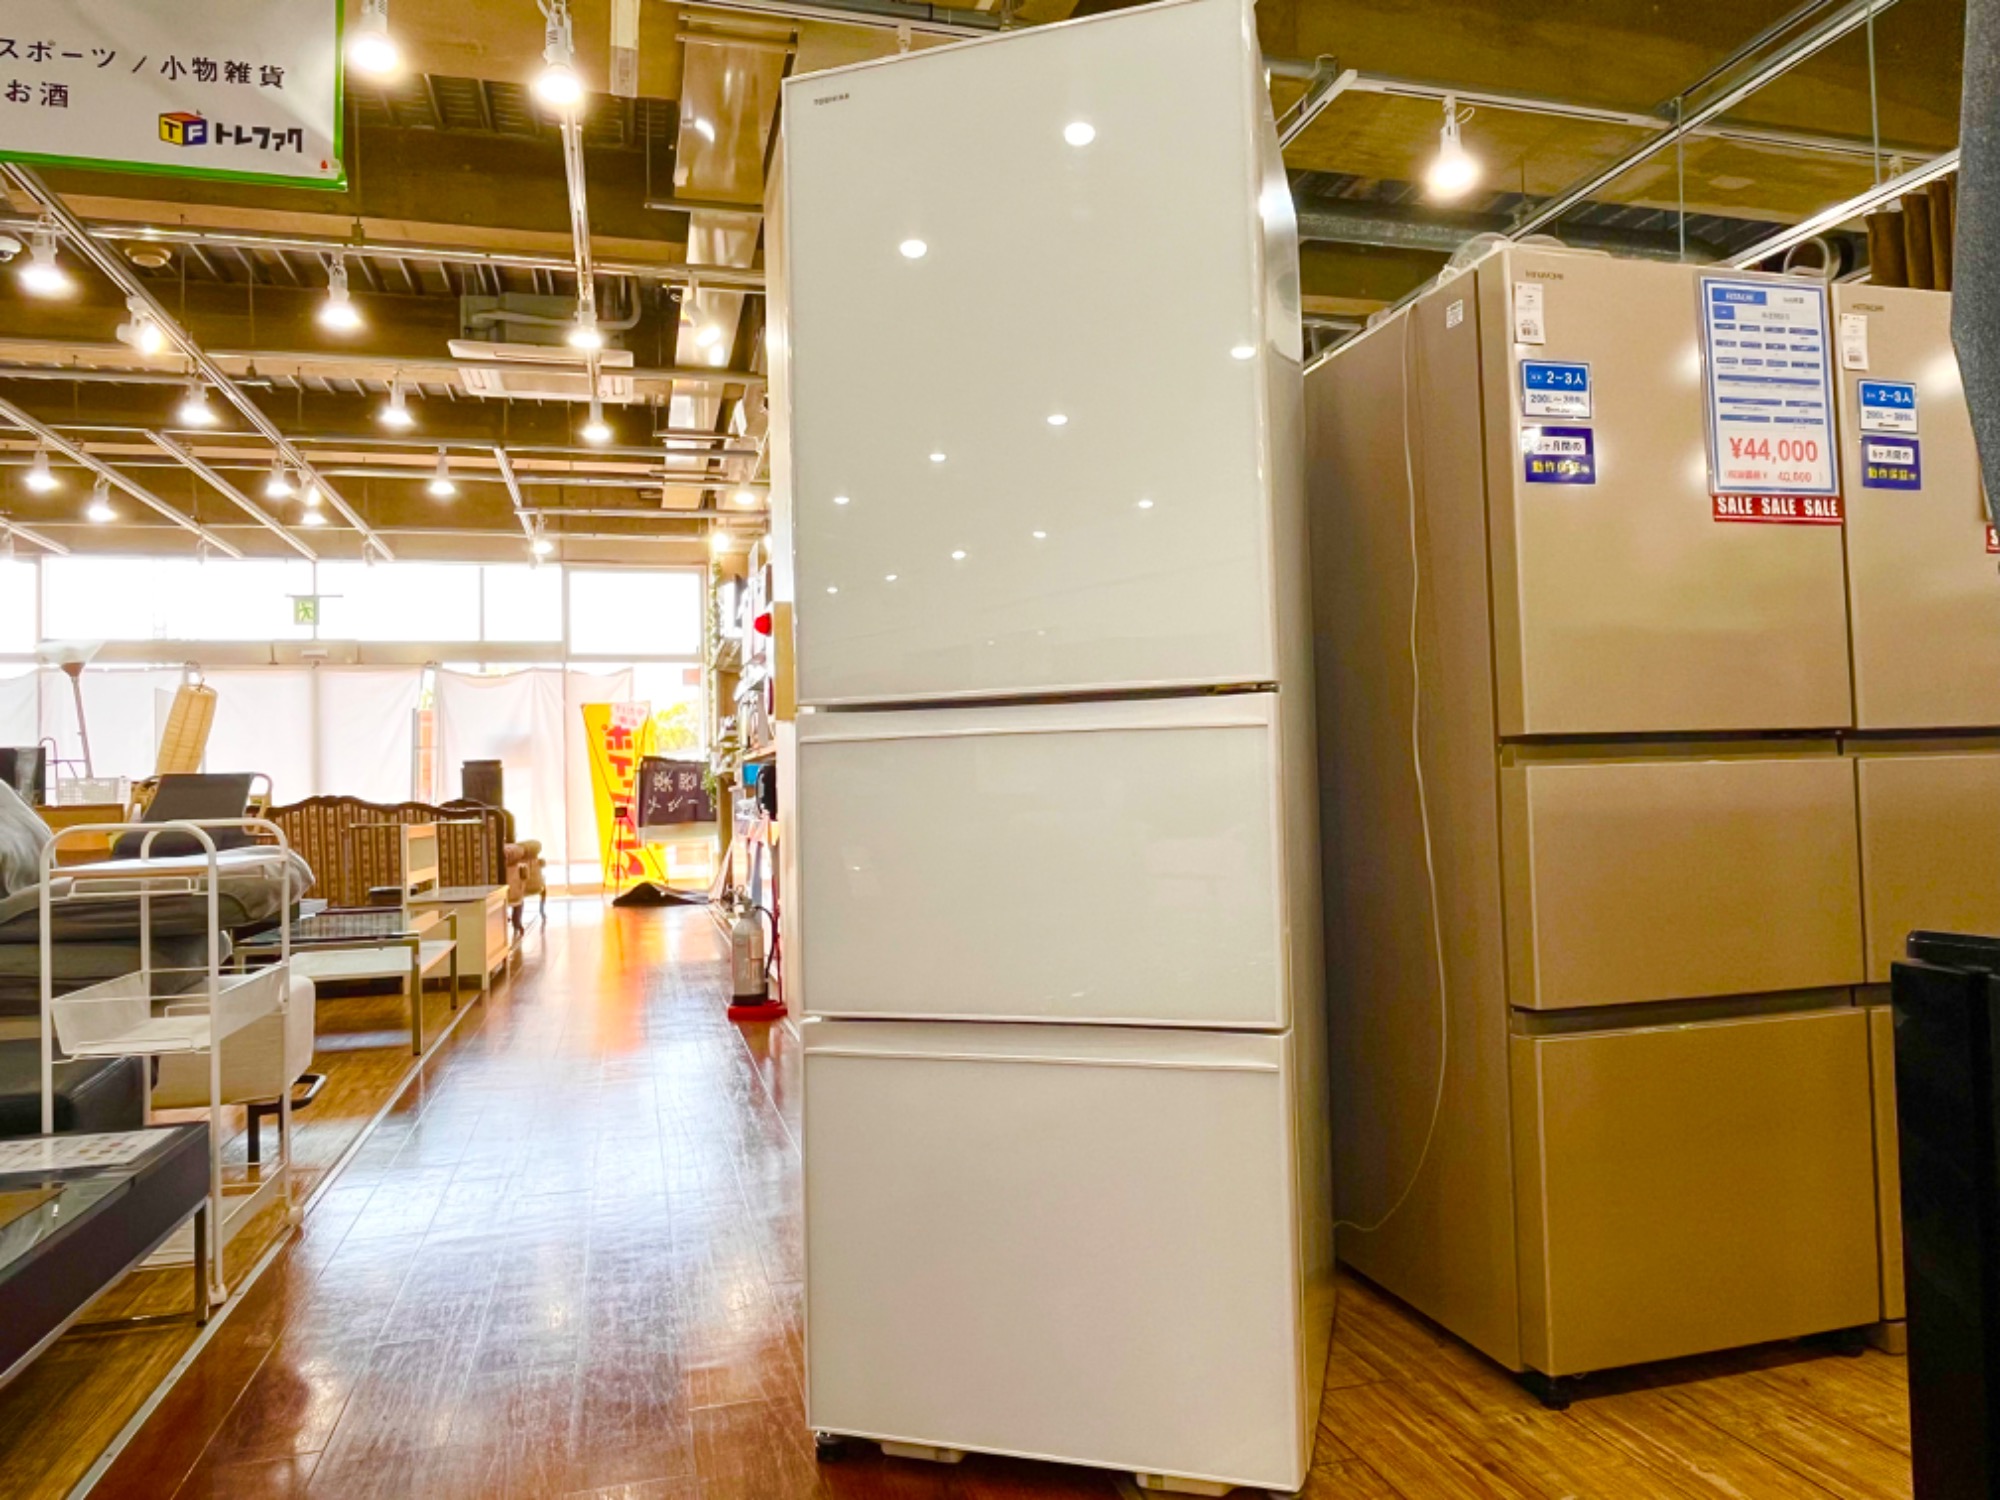 トレファク買物週間開催中‼】TOSHIBA 3ドア冷蔵庫が買取入荷しました 